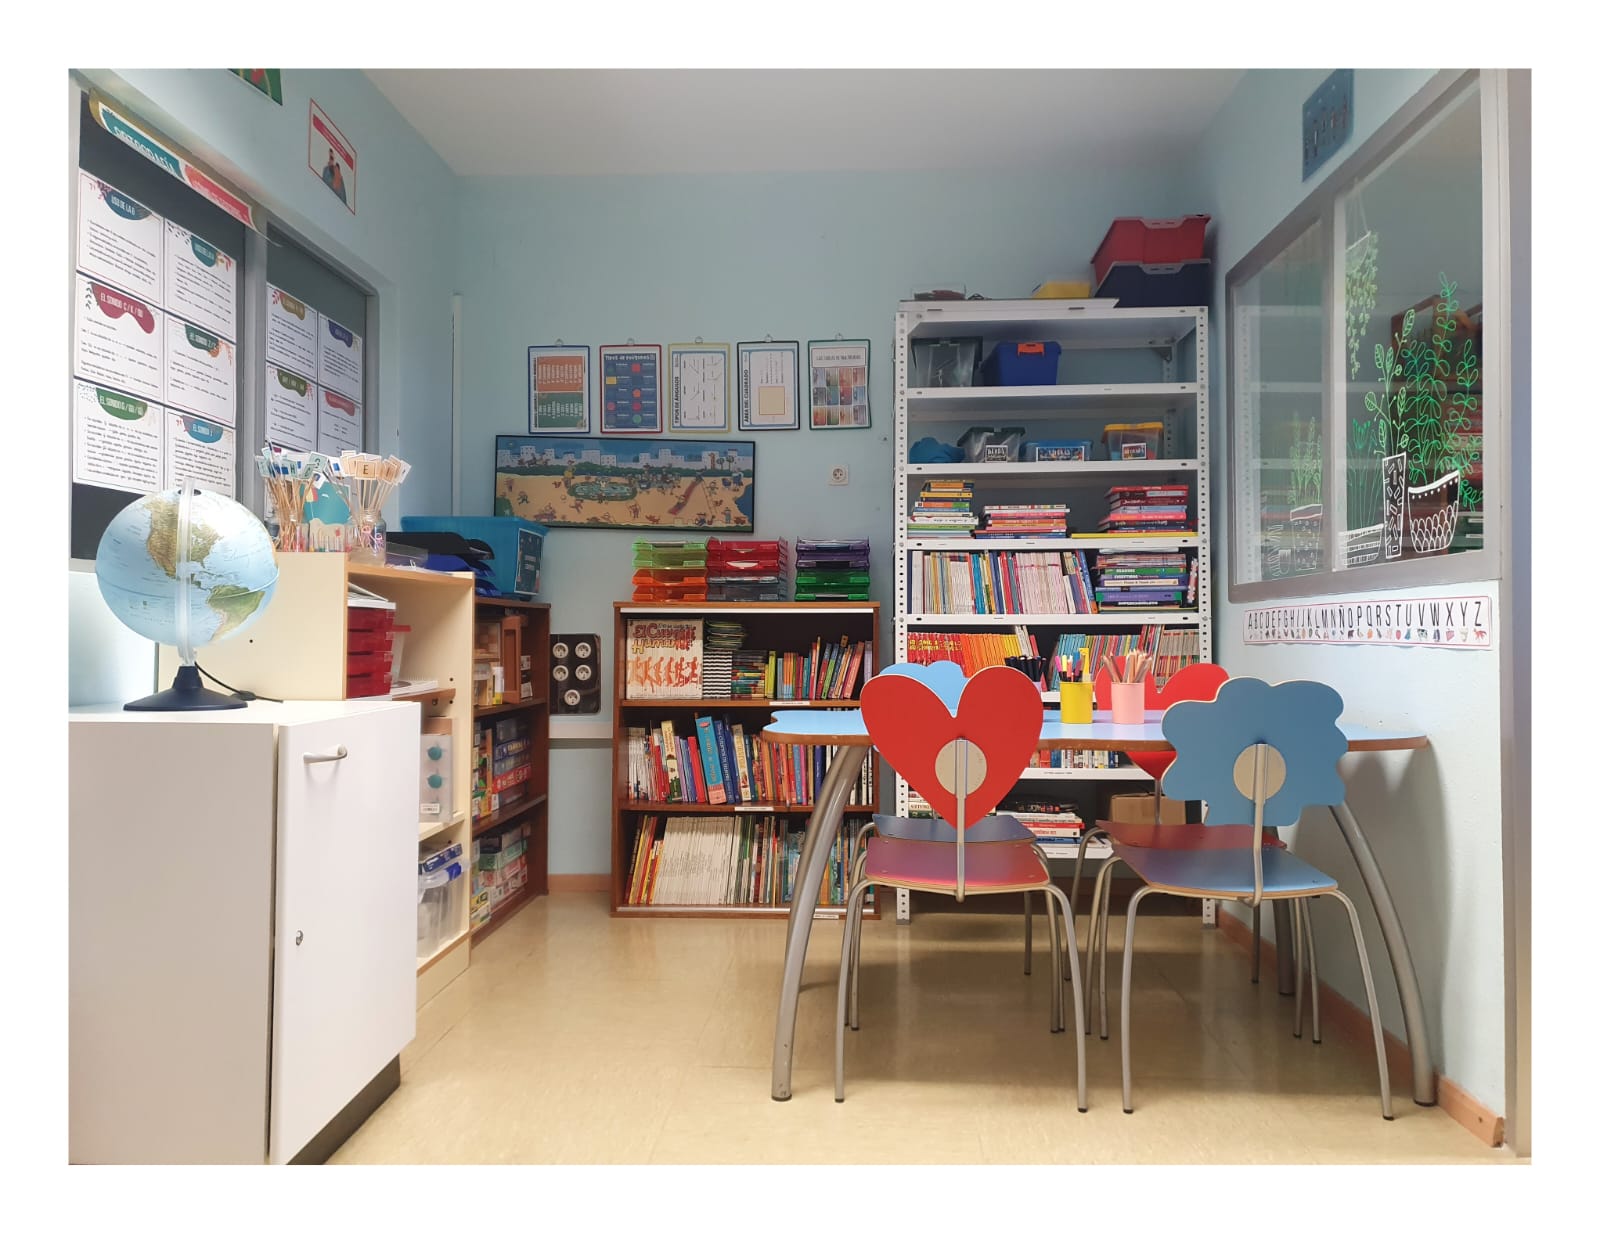 Aula interior de vistosos colores, con un escritorio, 4 sillas y gran cantidad de material escolar diverso tanto lectivo como para realizar actividades